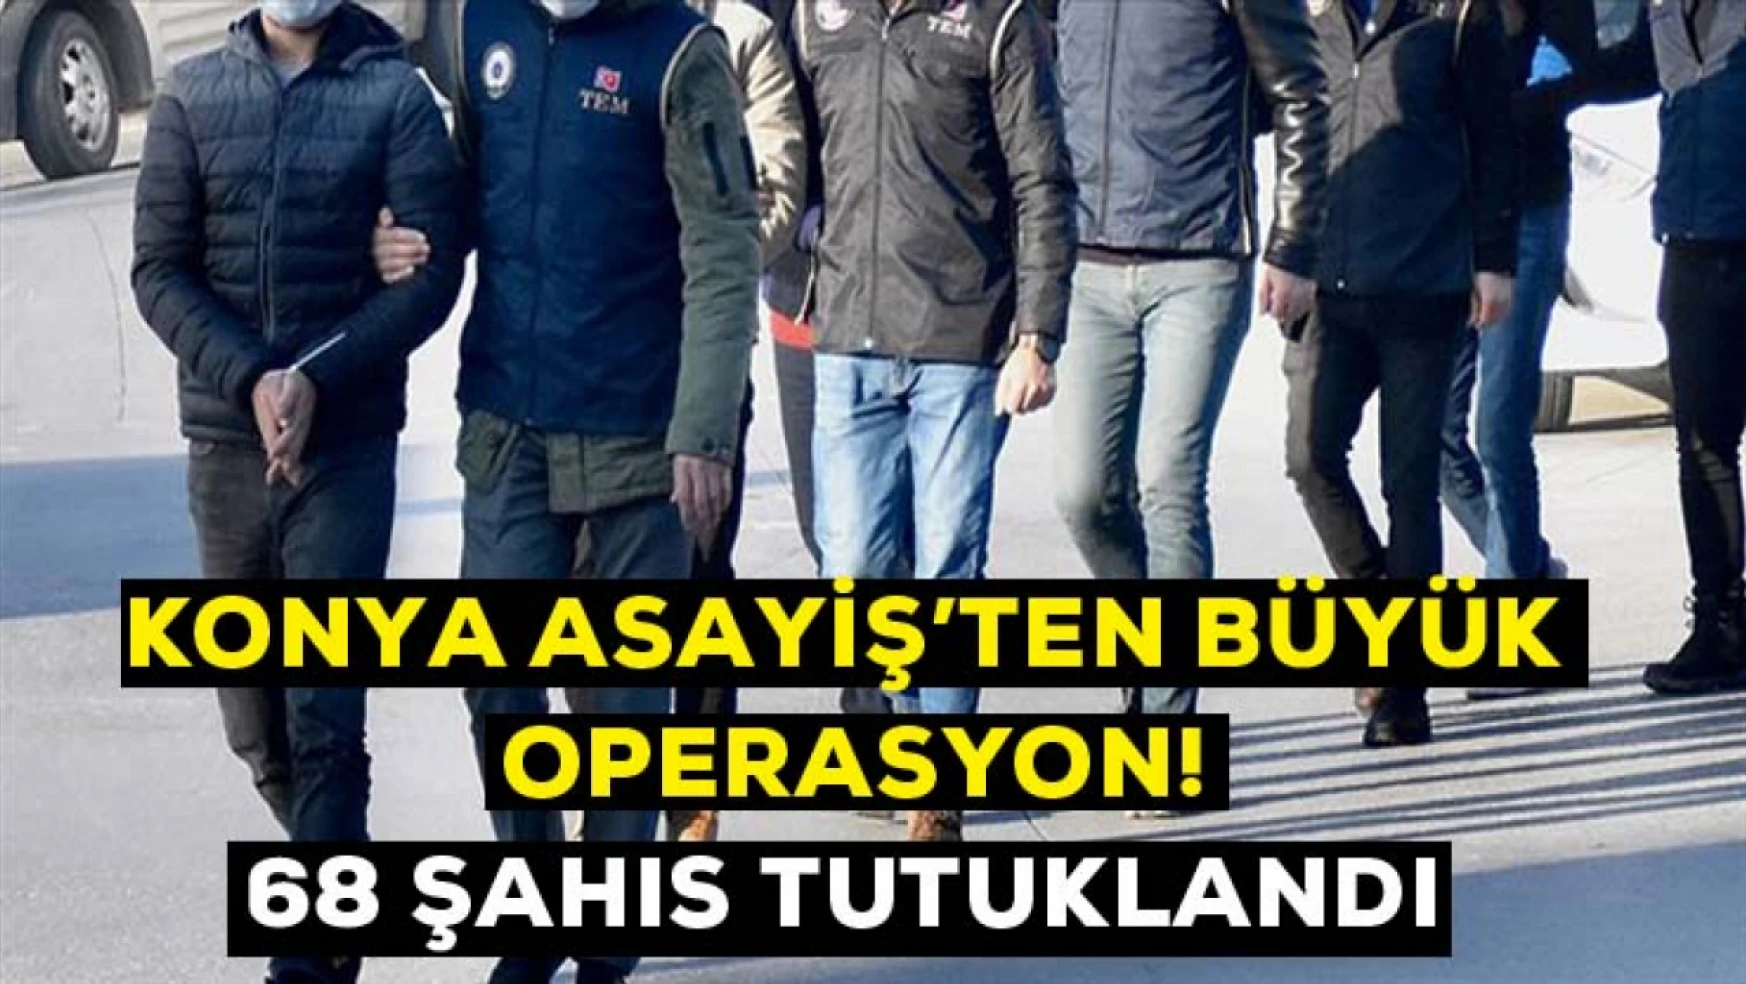 Konya asayiş şubeden büyük operasyon! 68 kişi tutuklandı